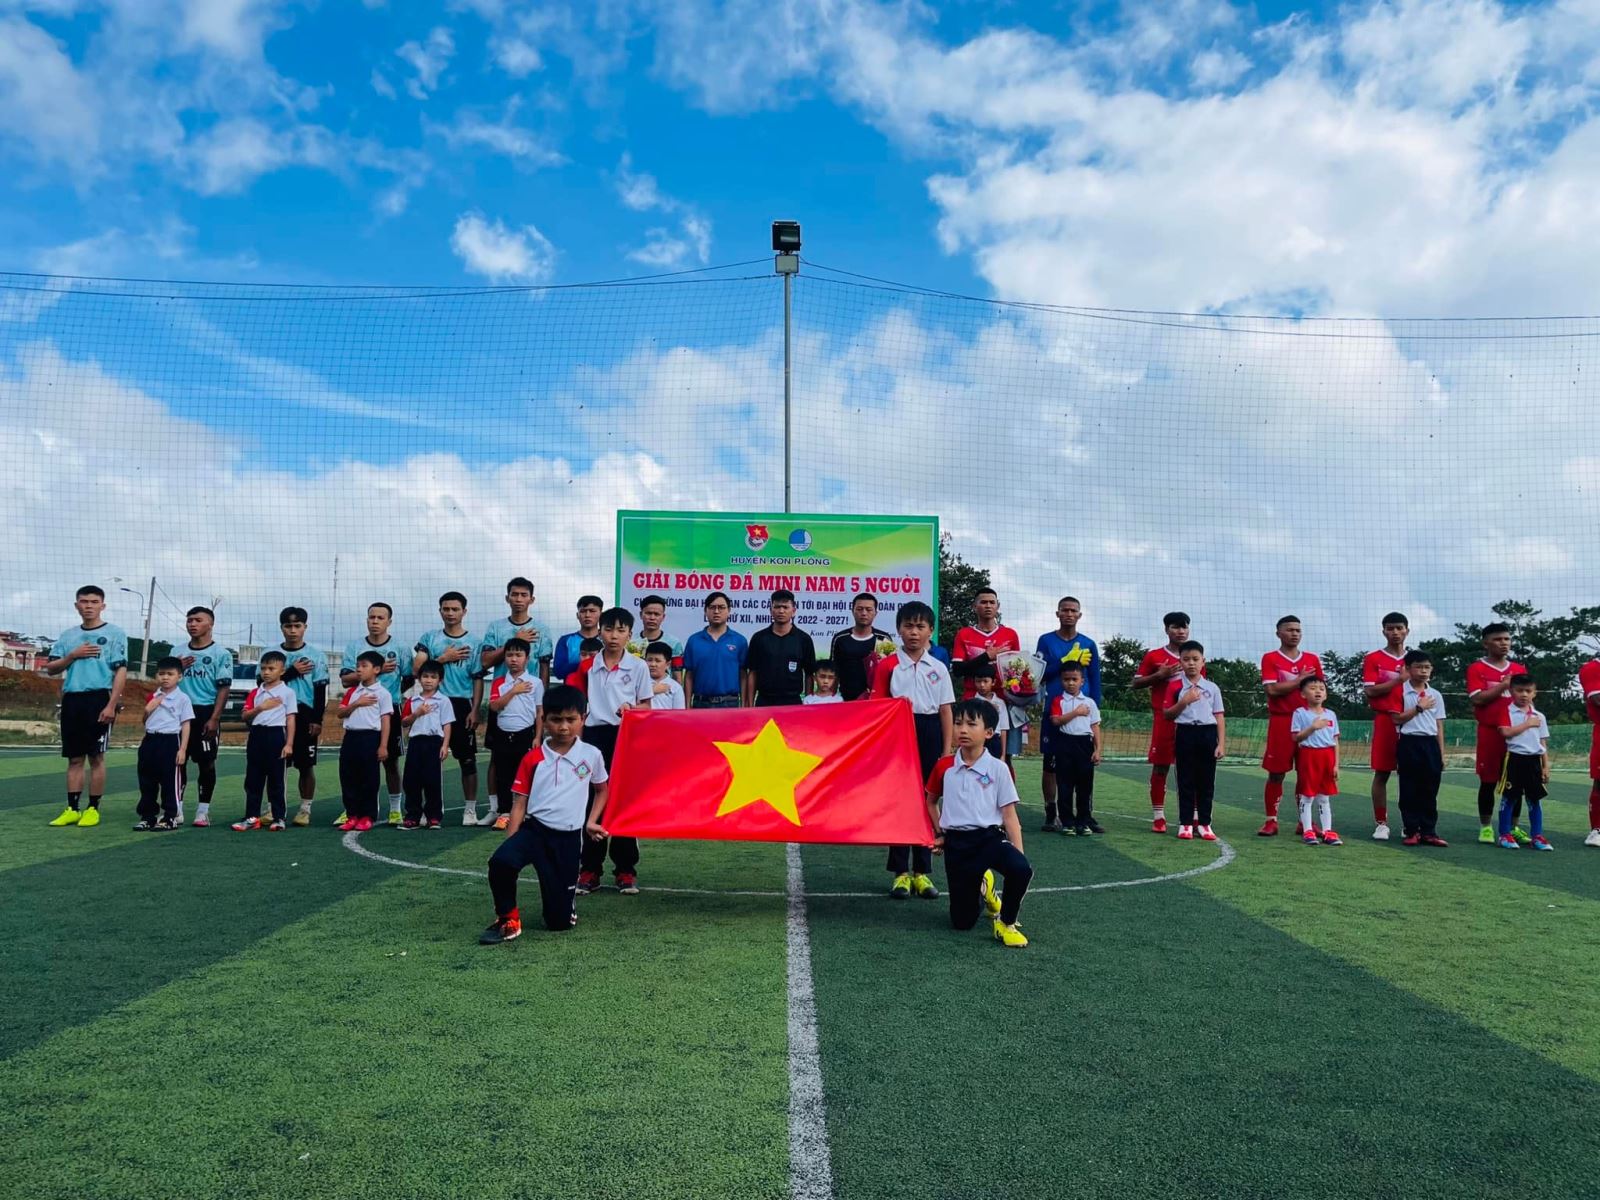 Huyện đoàn Kon Plông tổ chức lễ bế mạc Giải bóng đá Thanh niên chào mừng Đại hội Đoàn Thanh niên các cấp